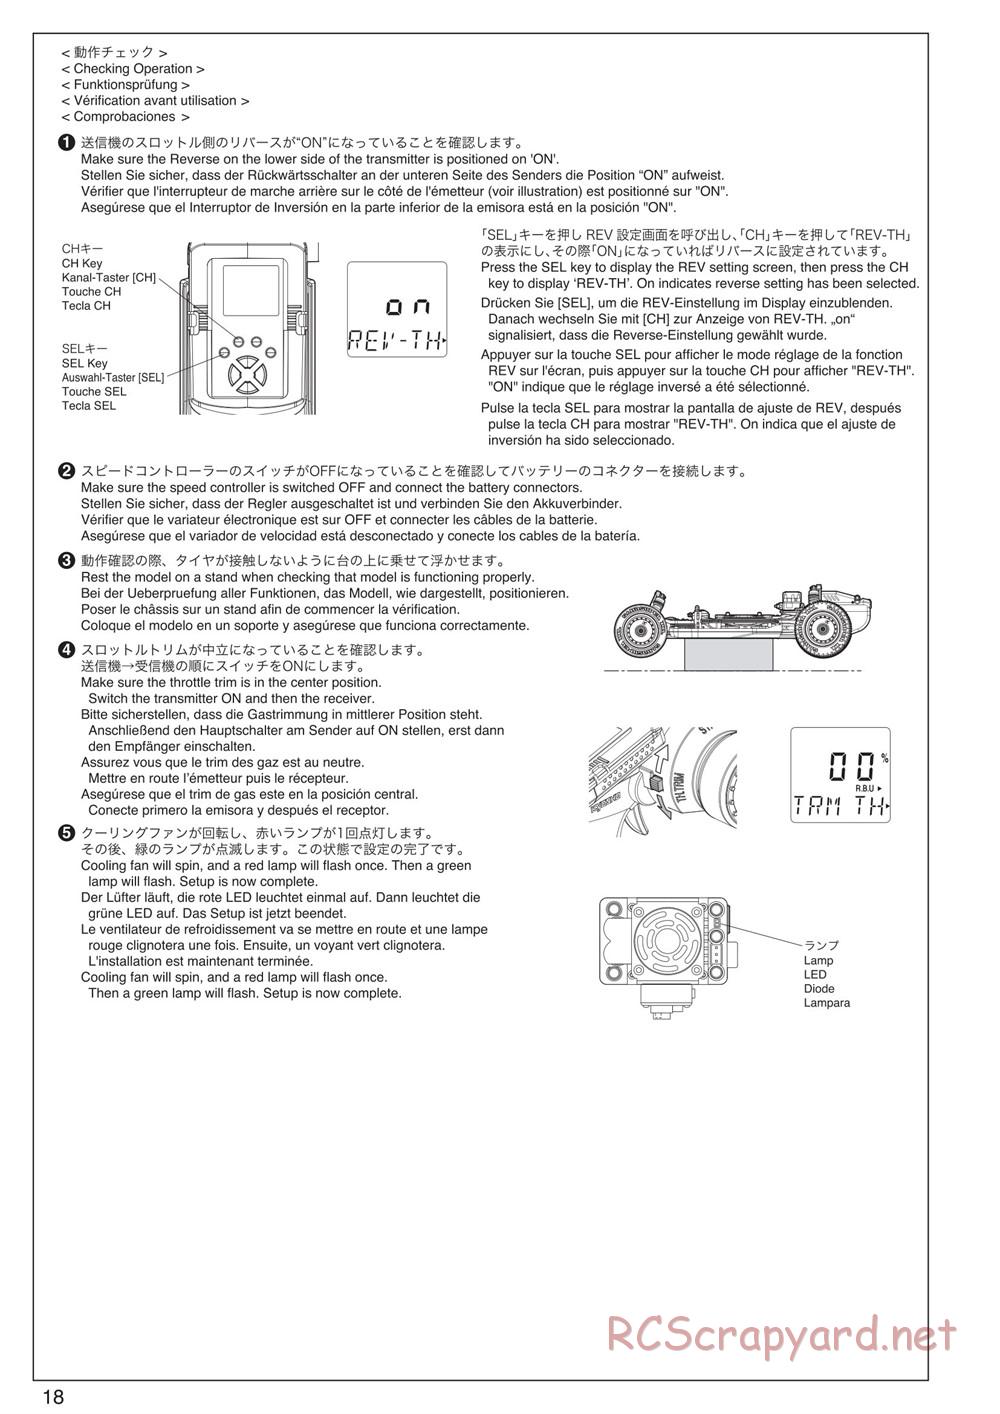 Kyosho - Scorpion XXL VE - Manual - Page 18